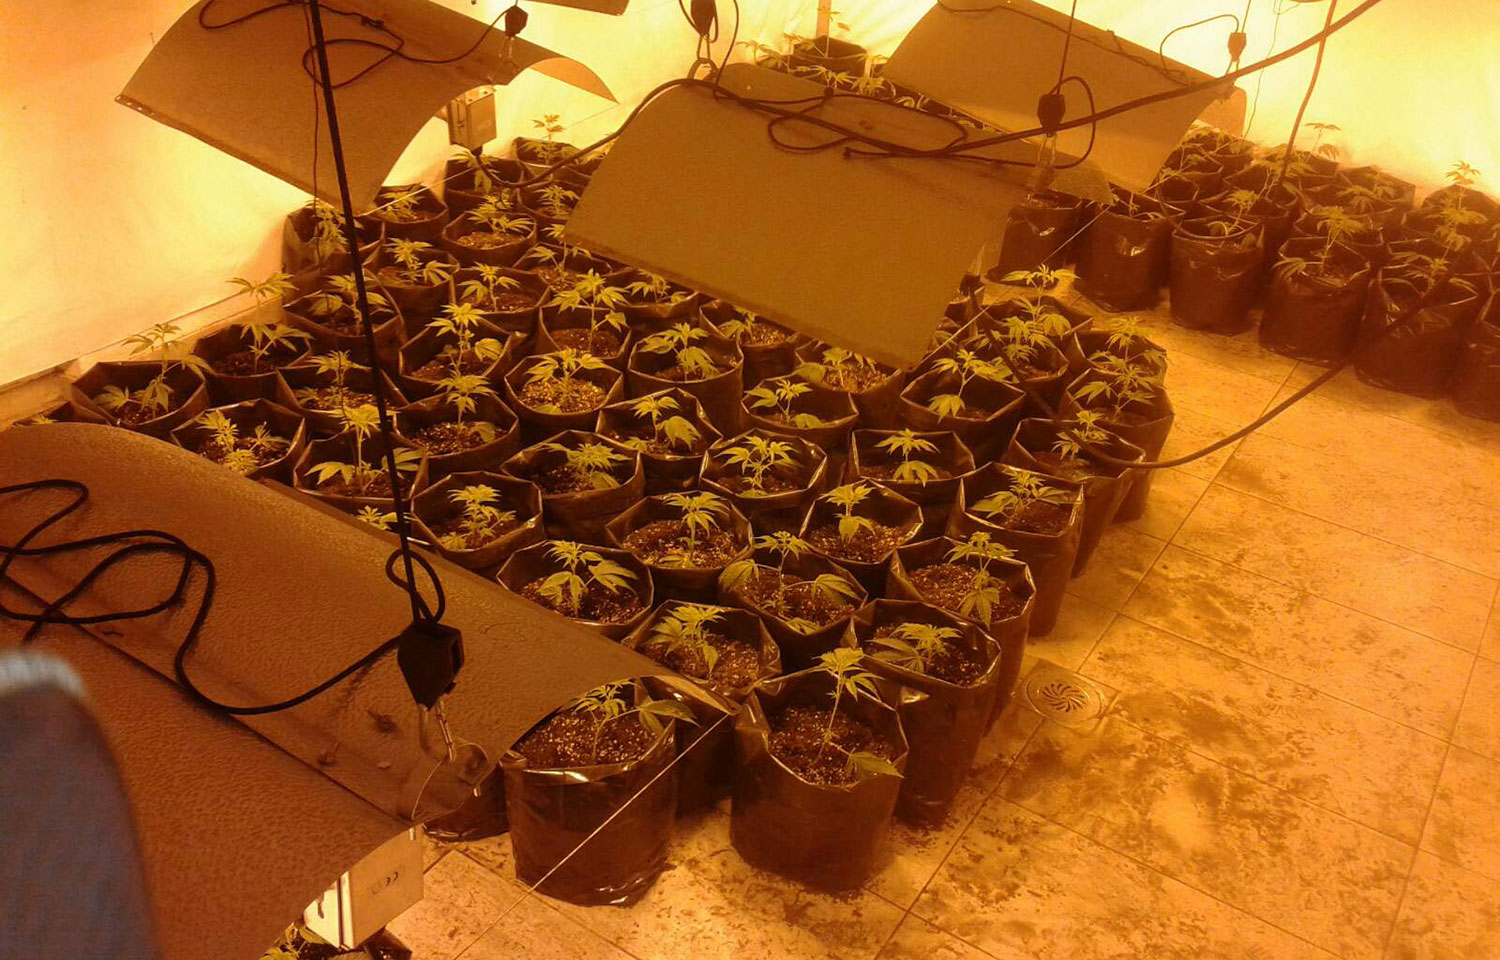 Otkrivena laboratorija za uzgoj marihuane u veštačkim uslovima i uhapšen osumnjičeni